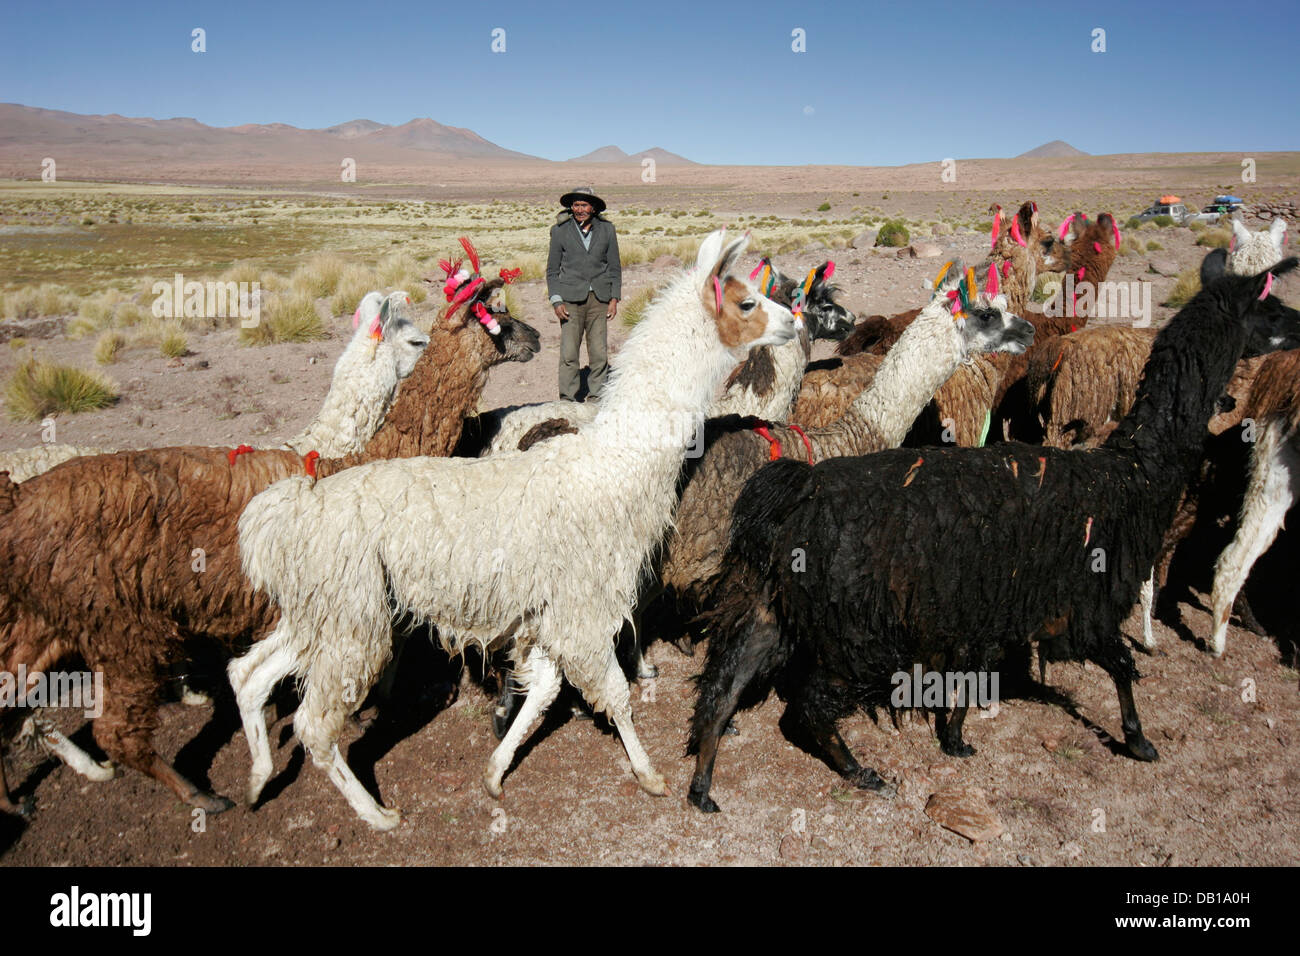 Herd of llamas and alpacas, Bolivian Altiplano, Bolivia, South America Stock Photo